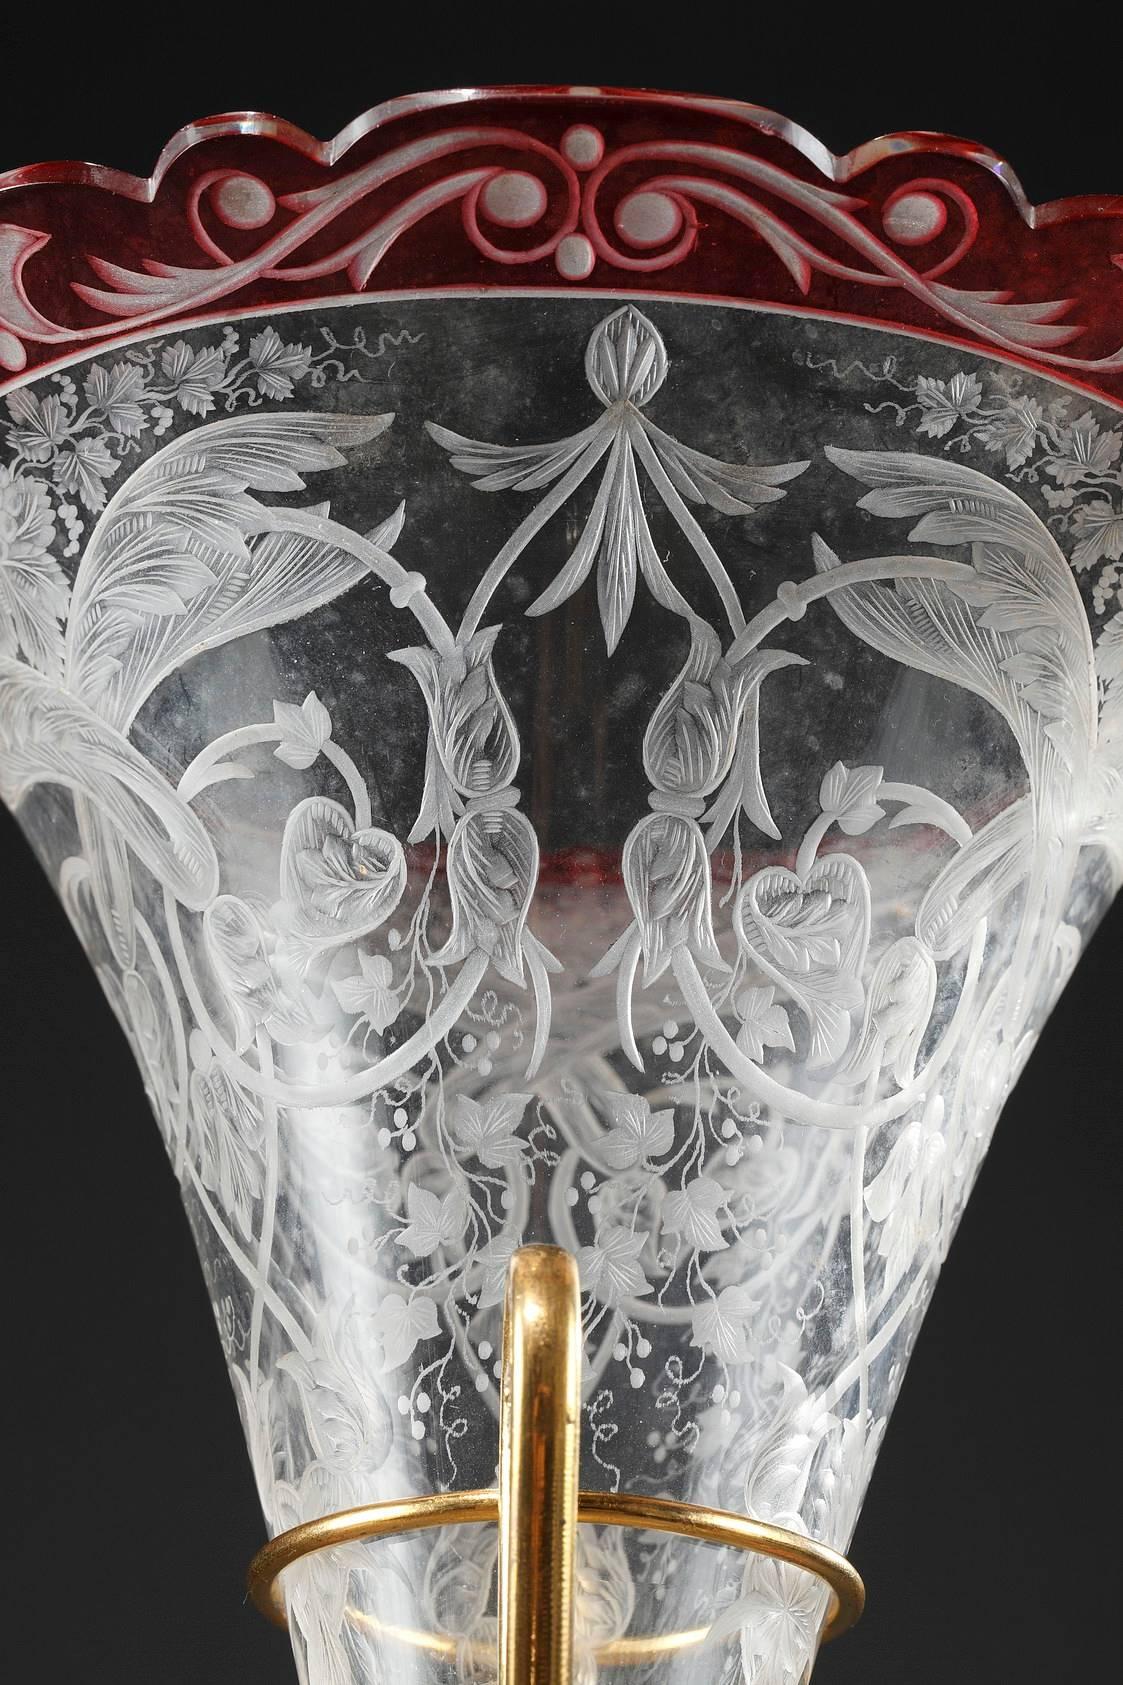 Rotes und transparentes Kristall-Mittelstück, bestehend aus einer ausgestellten Vase und einem Becher. Sie sind mit Rinceau-Blättern, Weinreben und Blattwerk graviert. Die vergoldeten Bronzebeschläge sind mit antiken Kameen verziert.